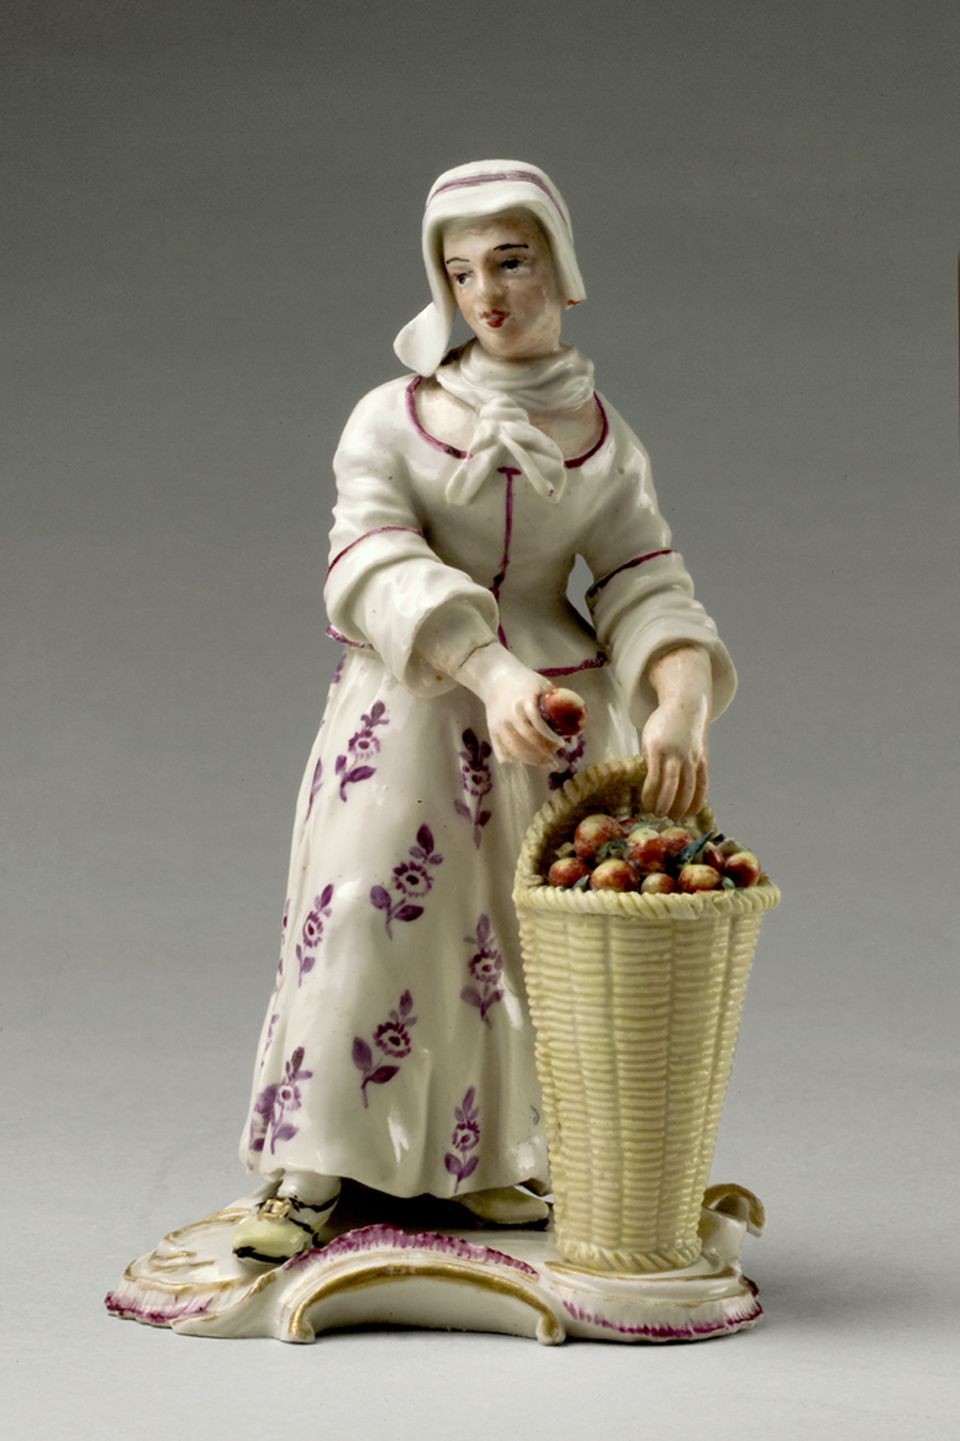 "Apfelverkäuferin" (Historisches Museum der Pfalz, Speyer CC BY)